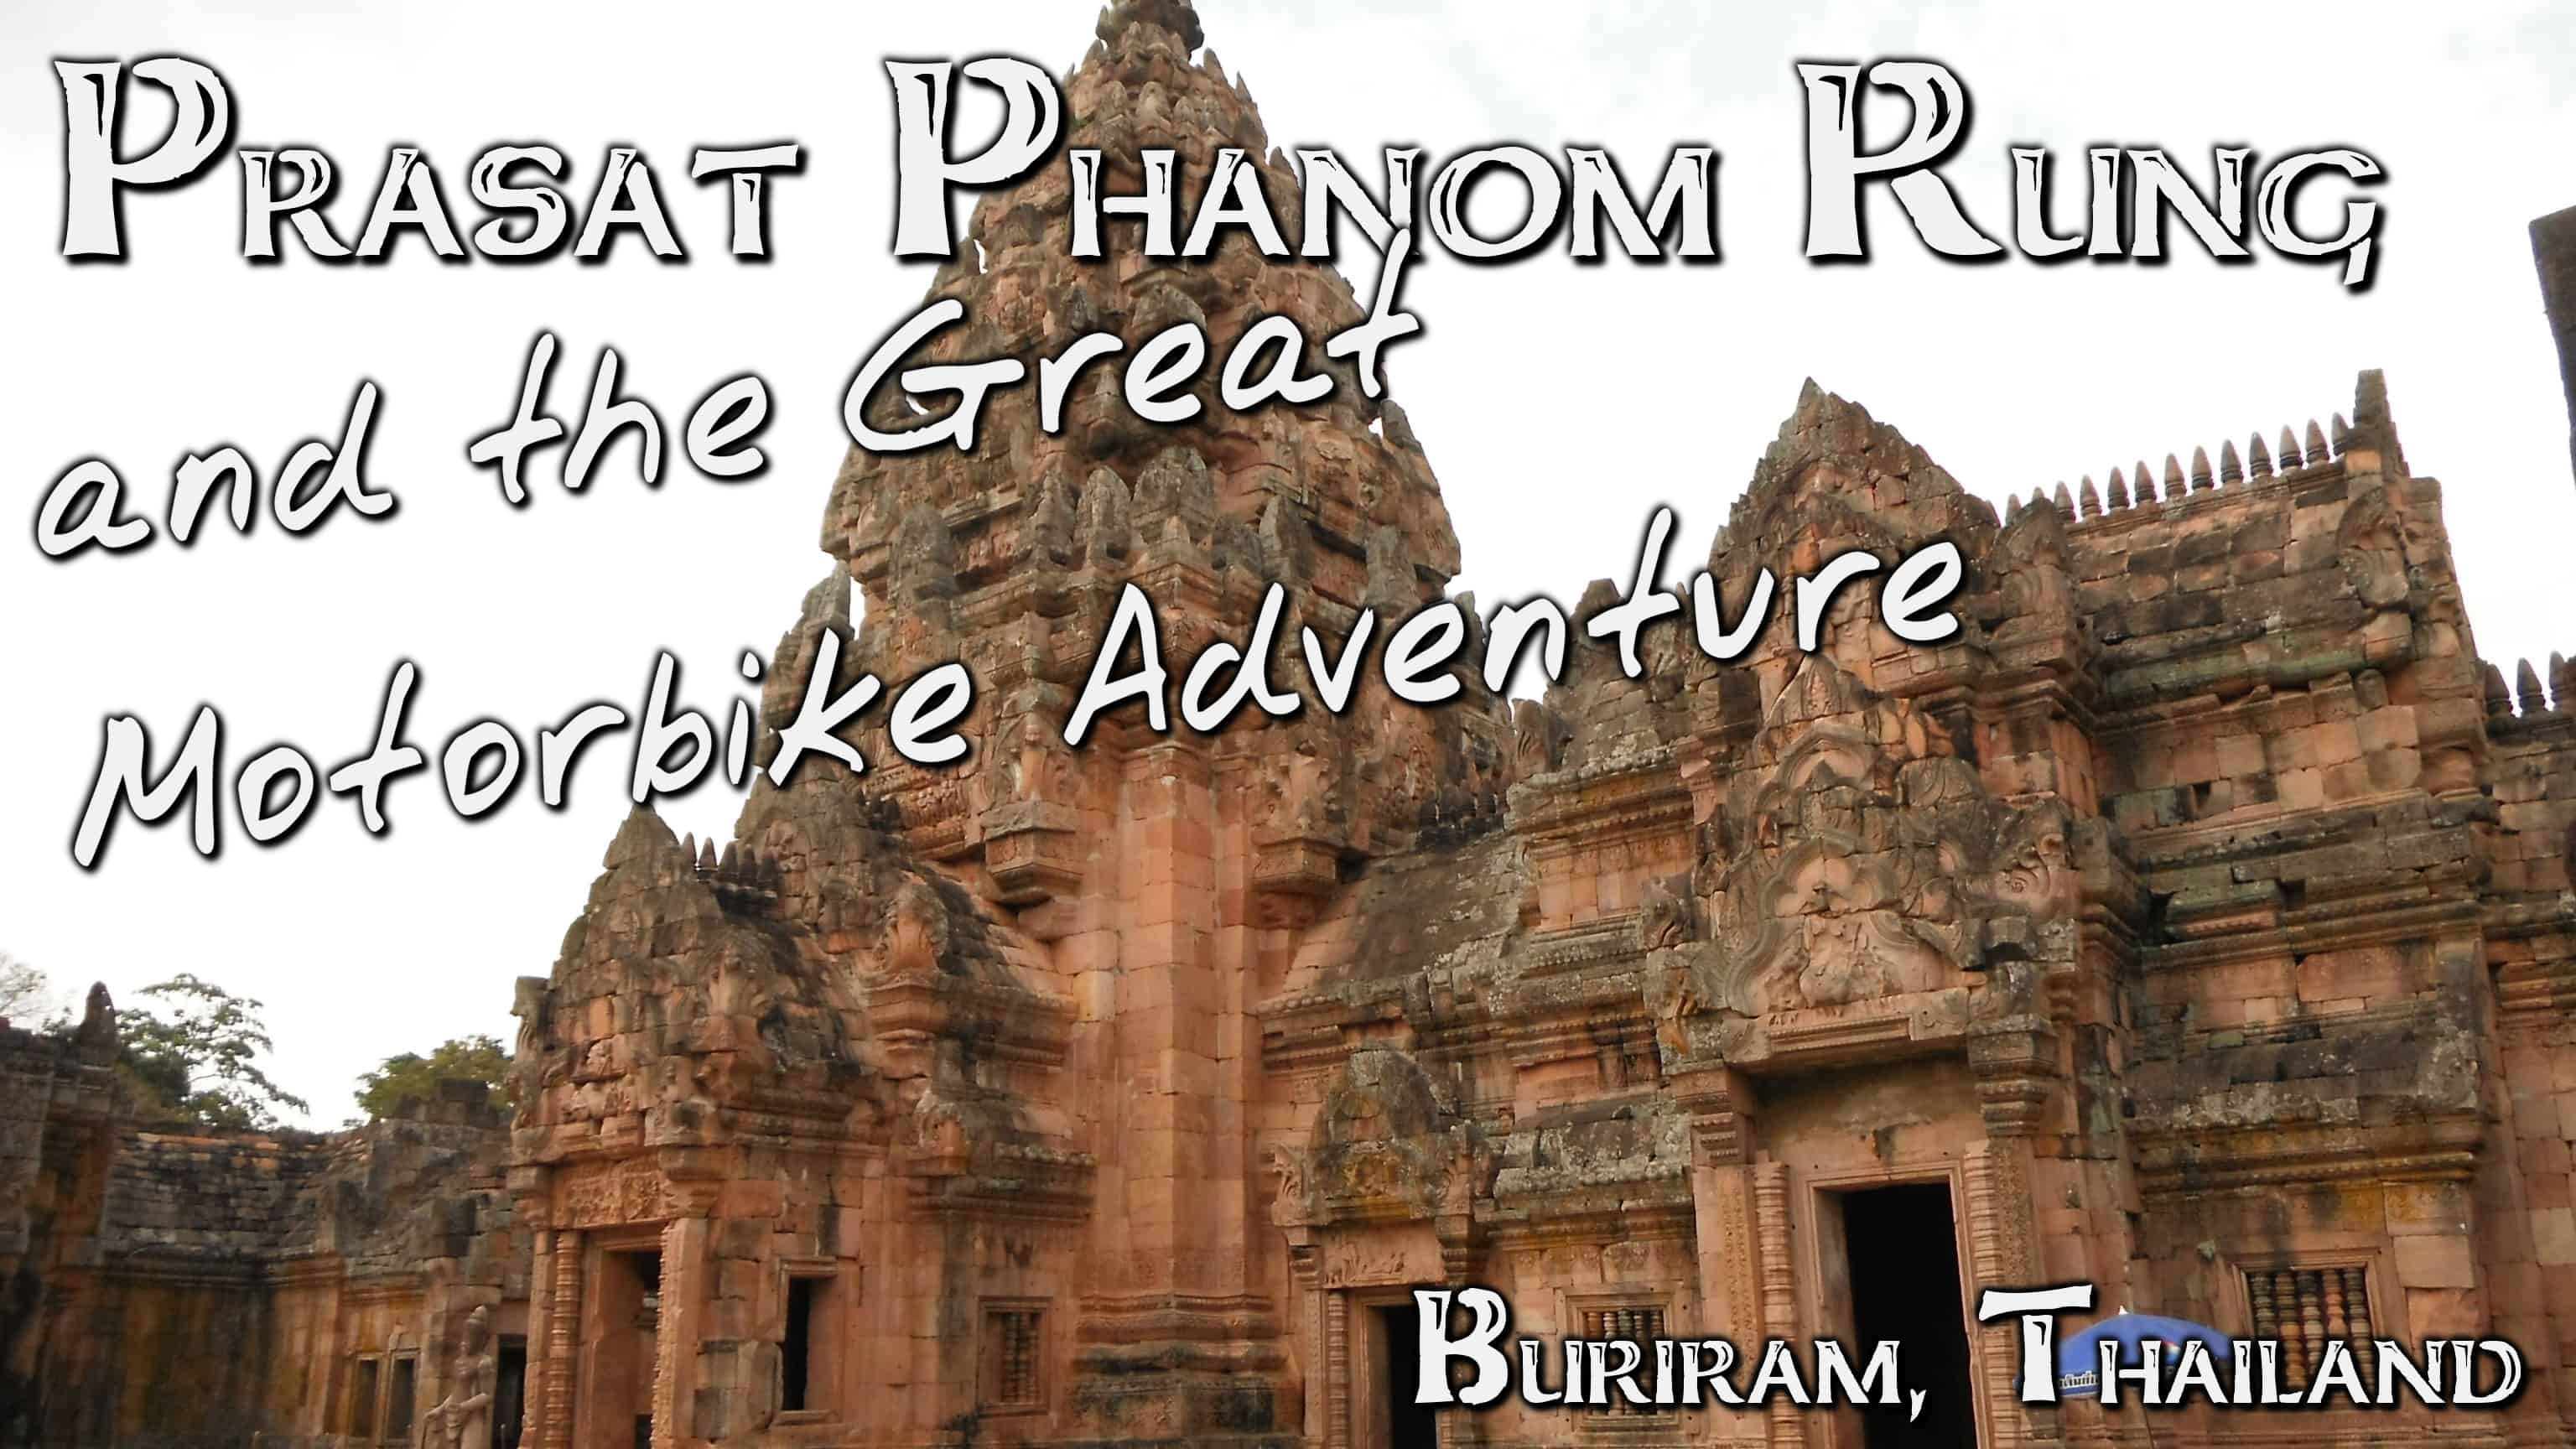 Phanom Rung and the Great Motorbike Adventure